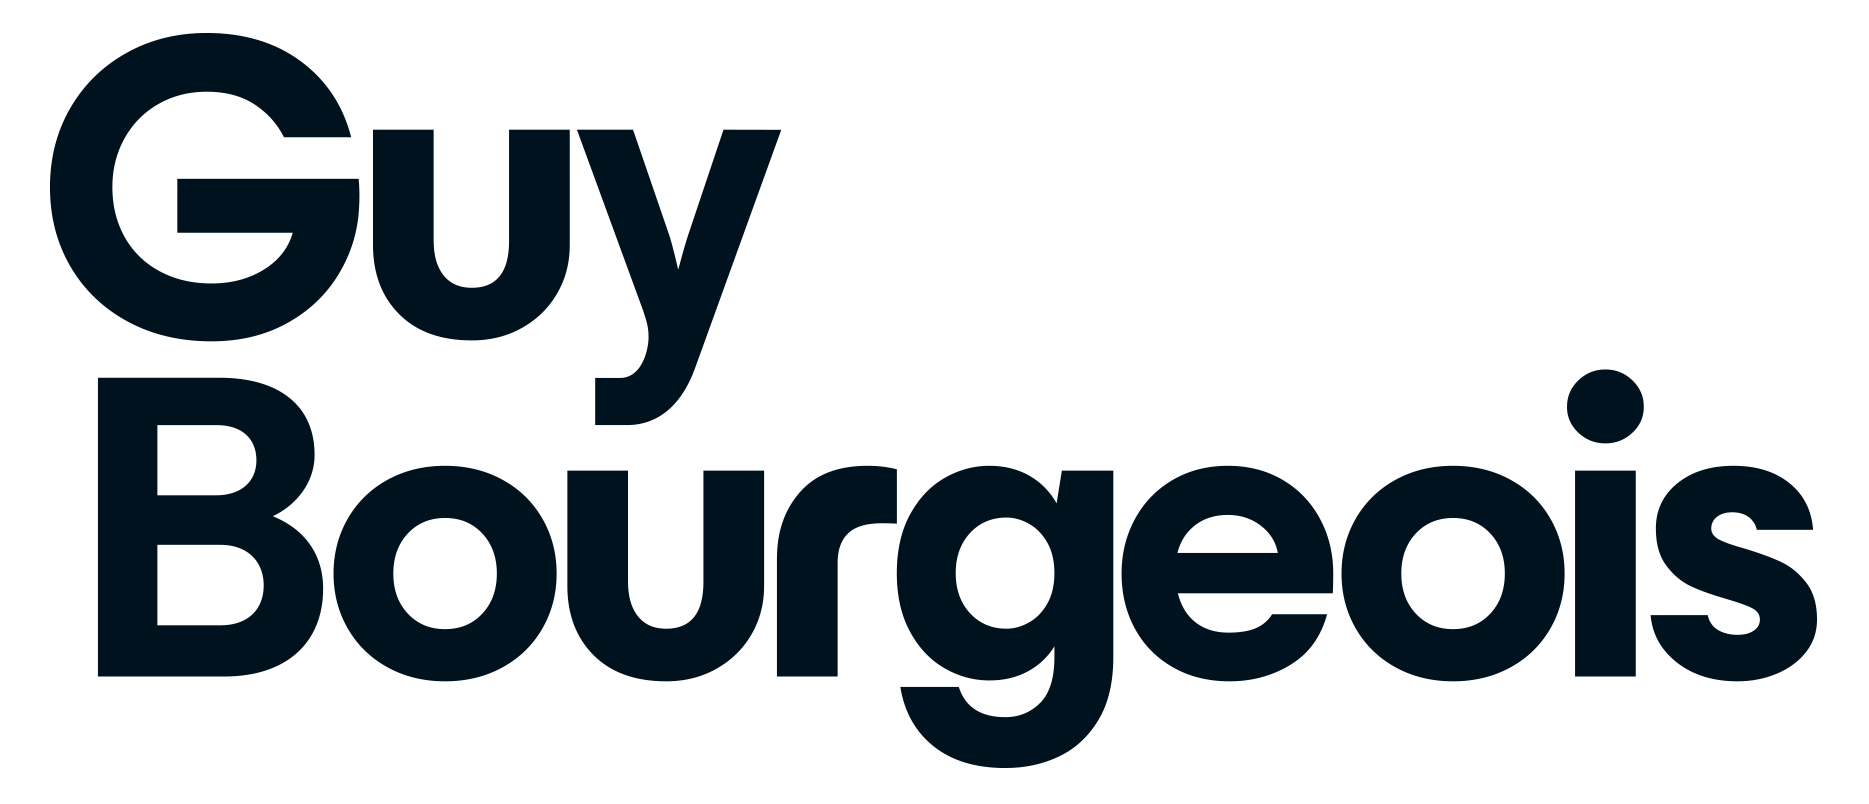 Guy Bourgeois – Conférencier, formateur en vente et leadership